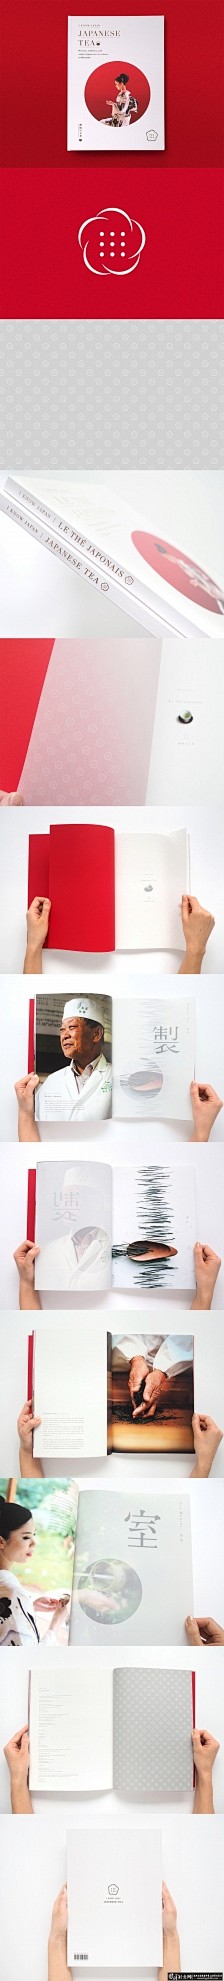 日本餐饮画册设计 创意餐饮画册设计 大气...